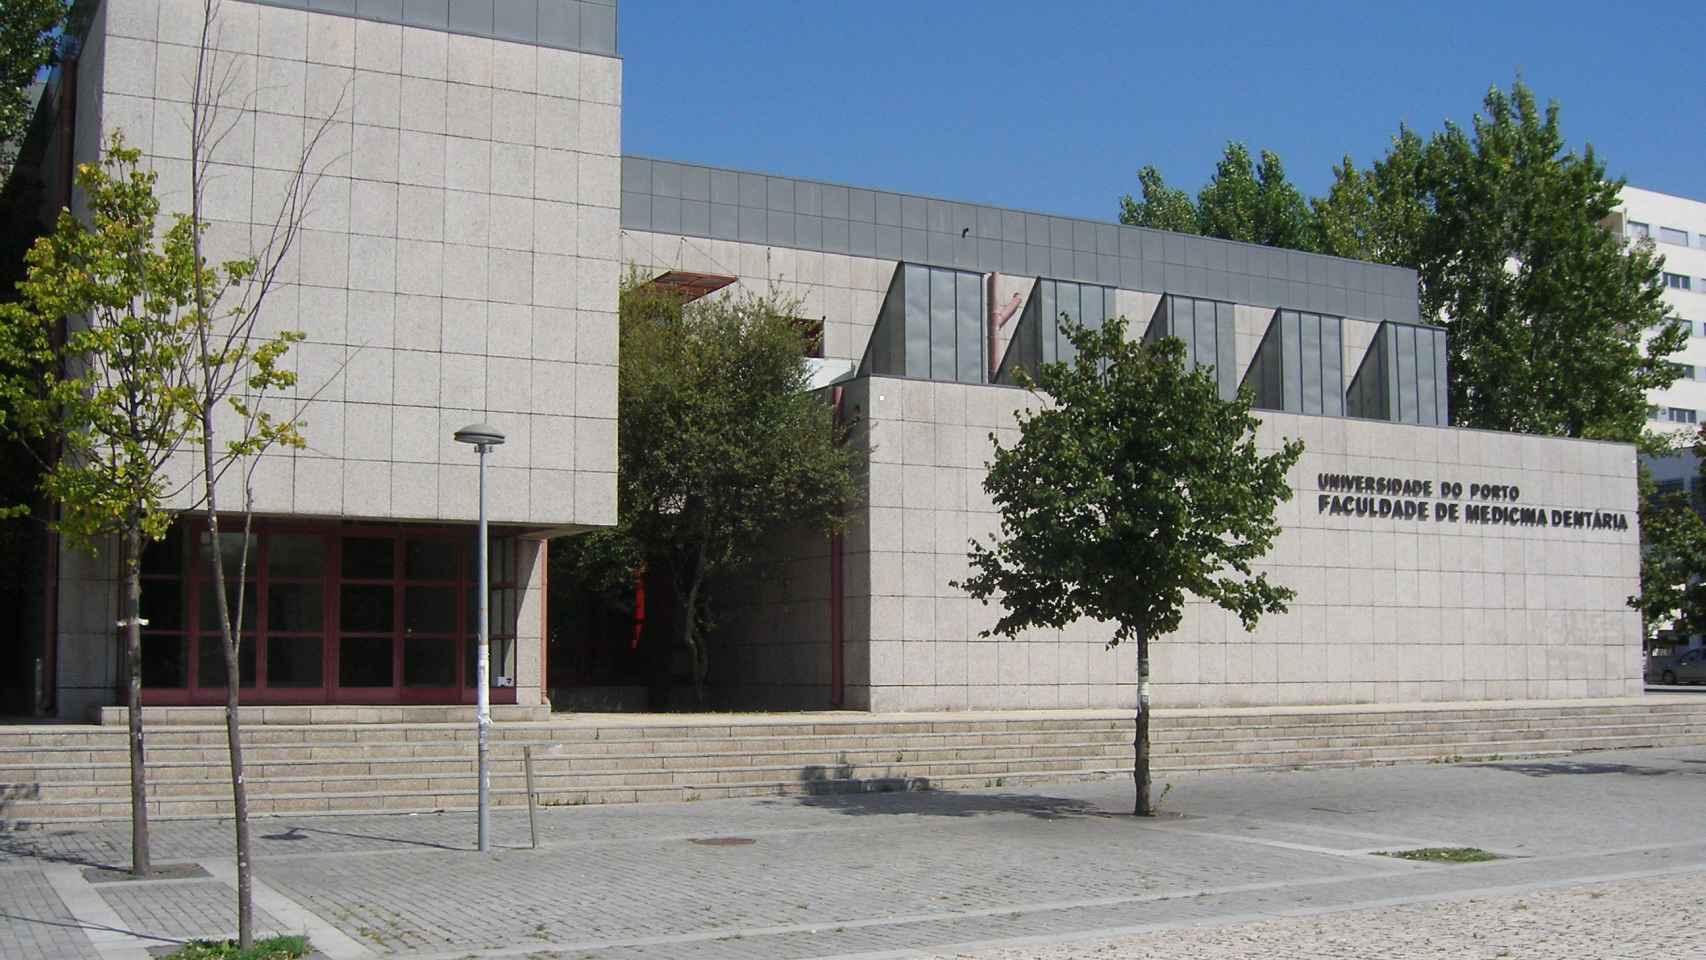 La fachada de la Facultad de Medicina Dental en Oporto.